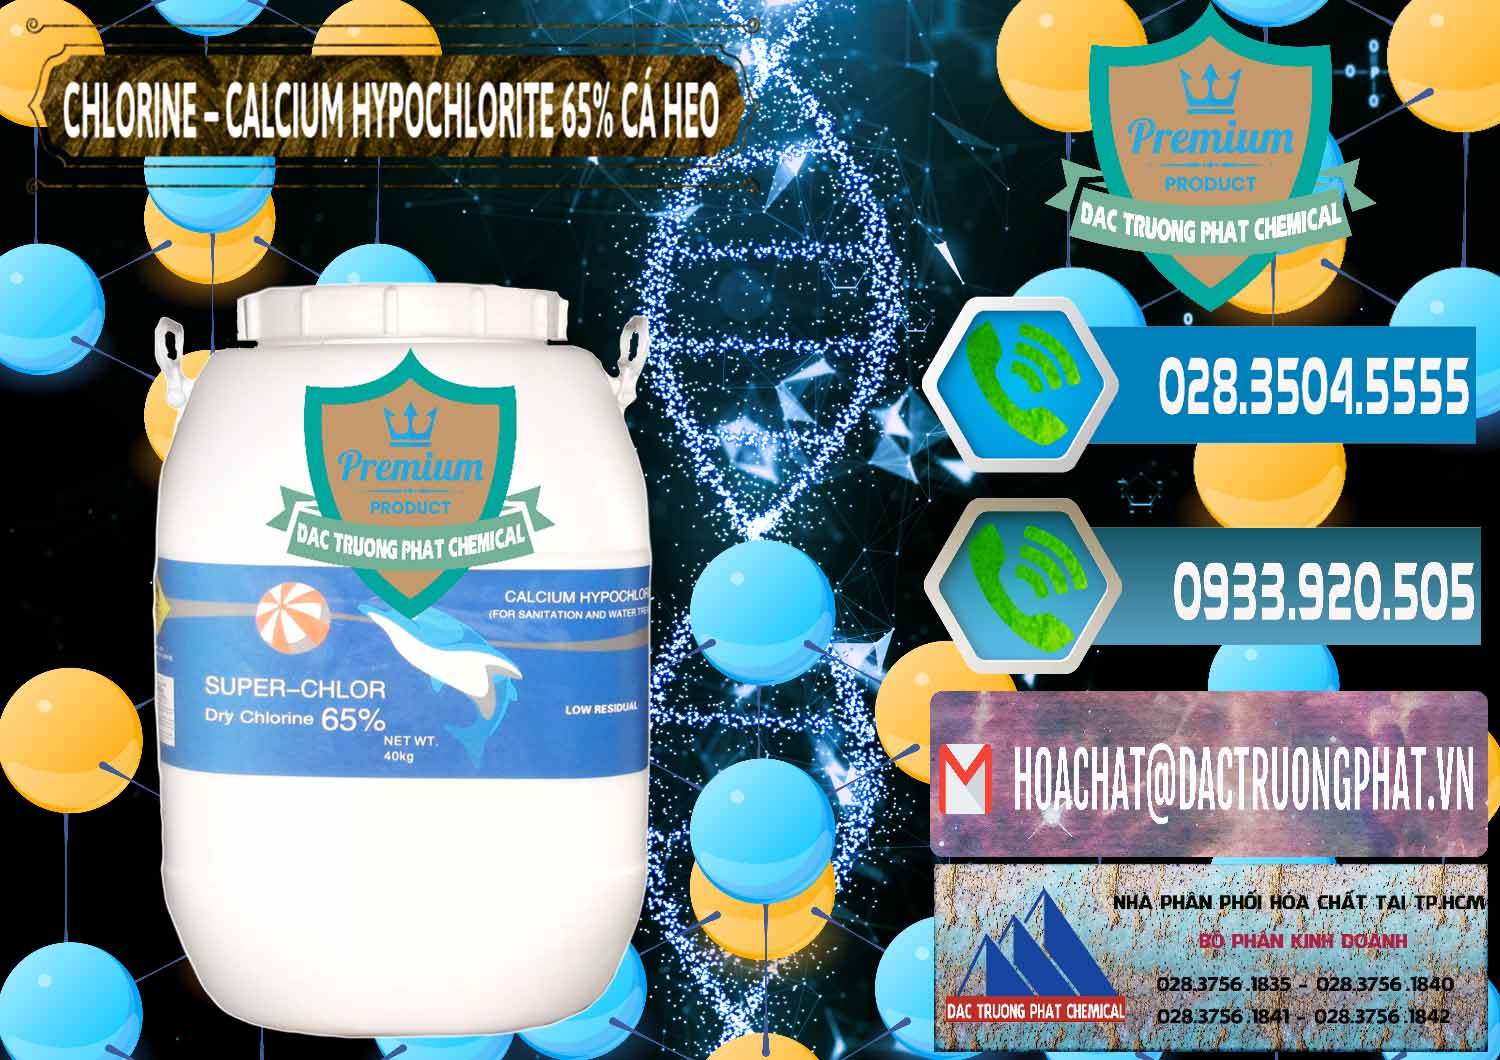 Nơi phân phối và bán Clorin - Chlorine Cá Heo 65% Trung Quốc China - 0053 - Công ty cung cấp ( kinh doanh ) hóa chất tại TP.HCM - congtyhoachat.net